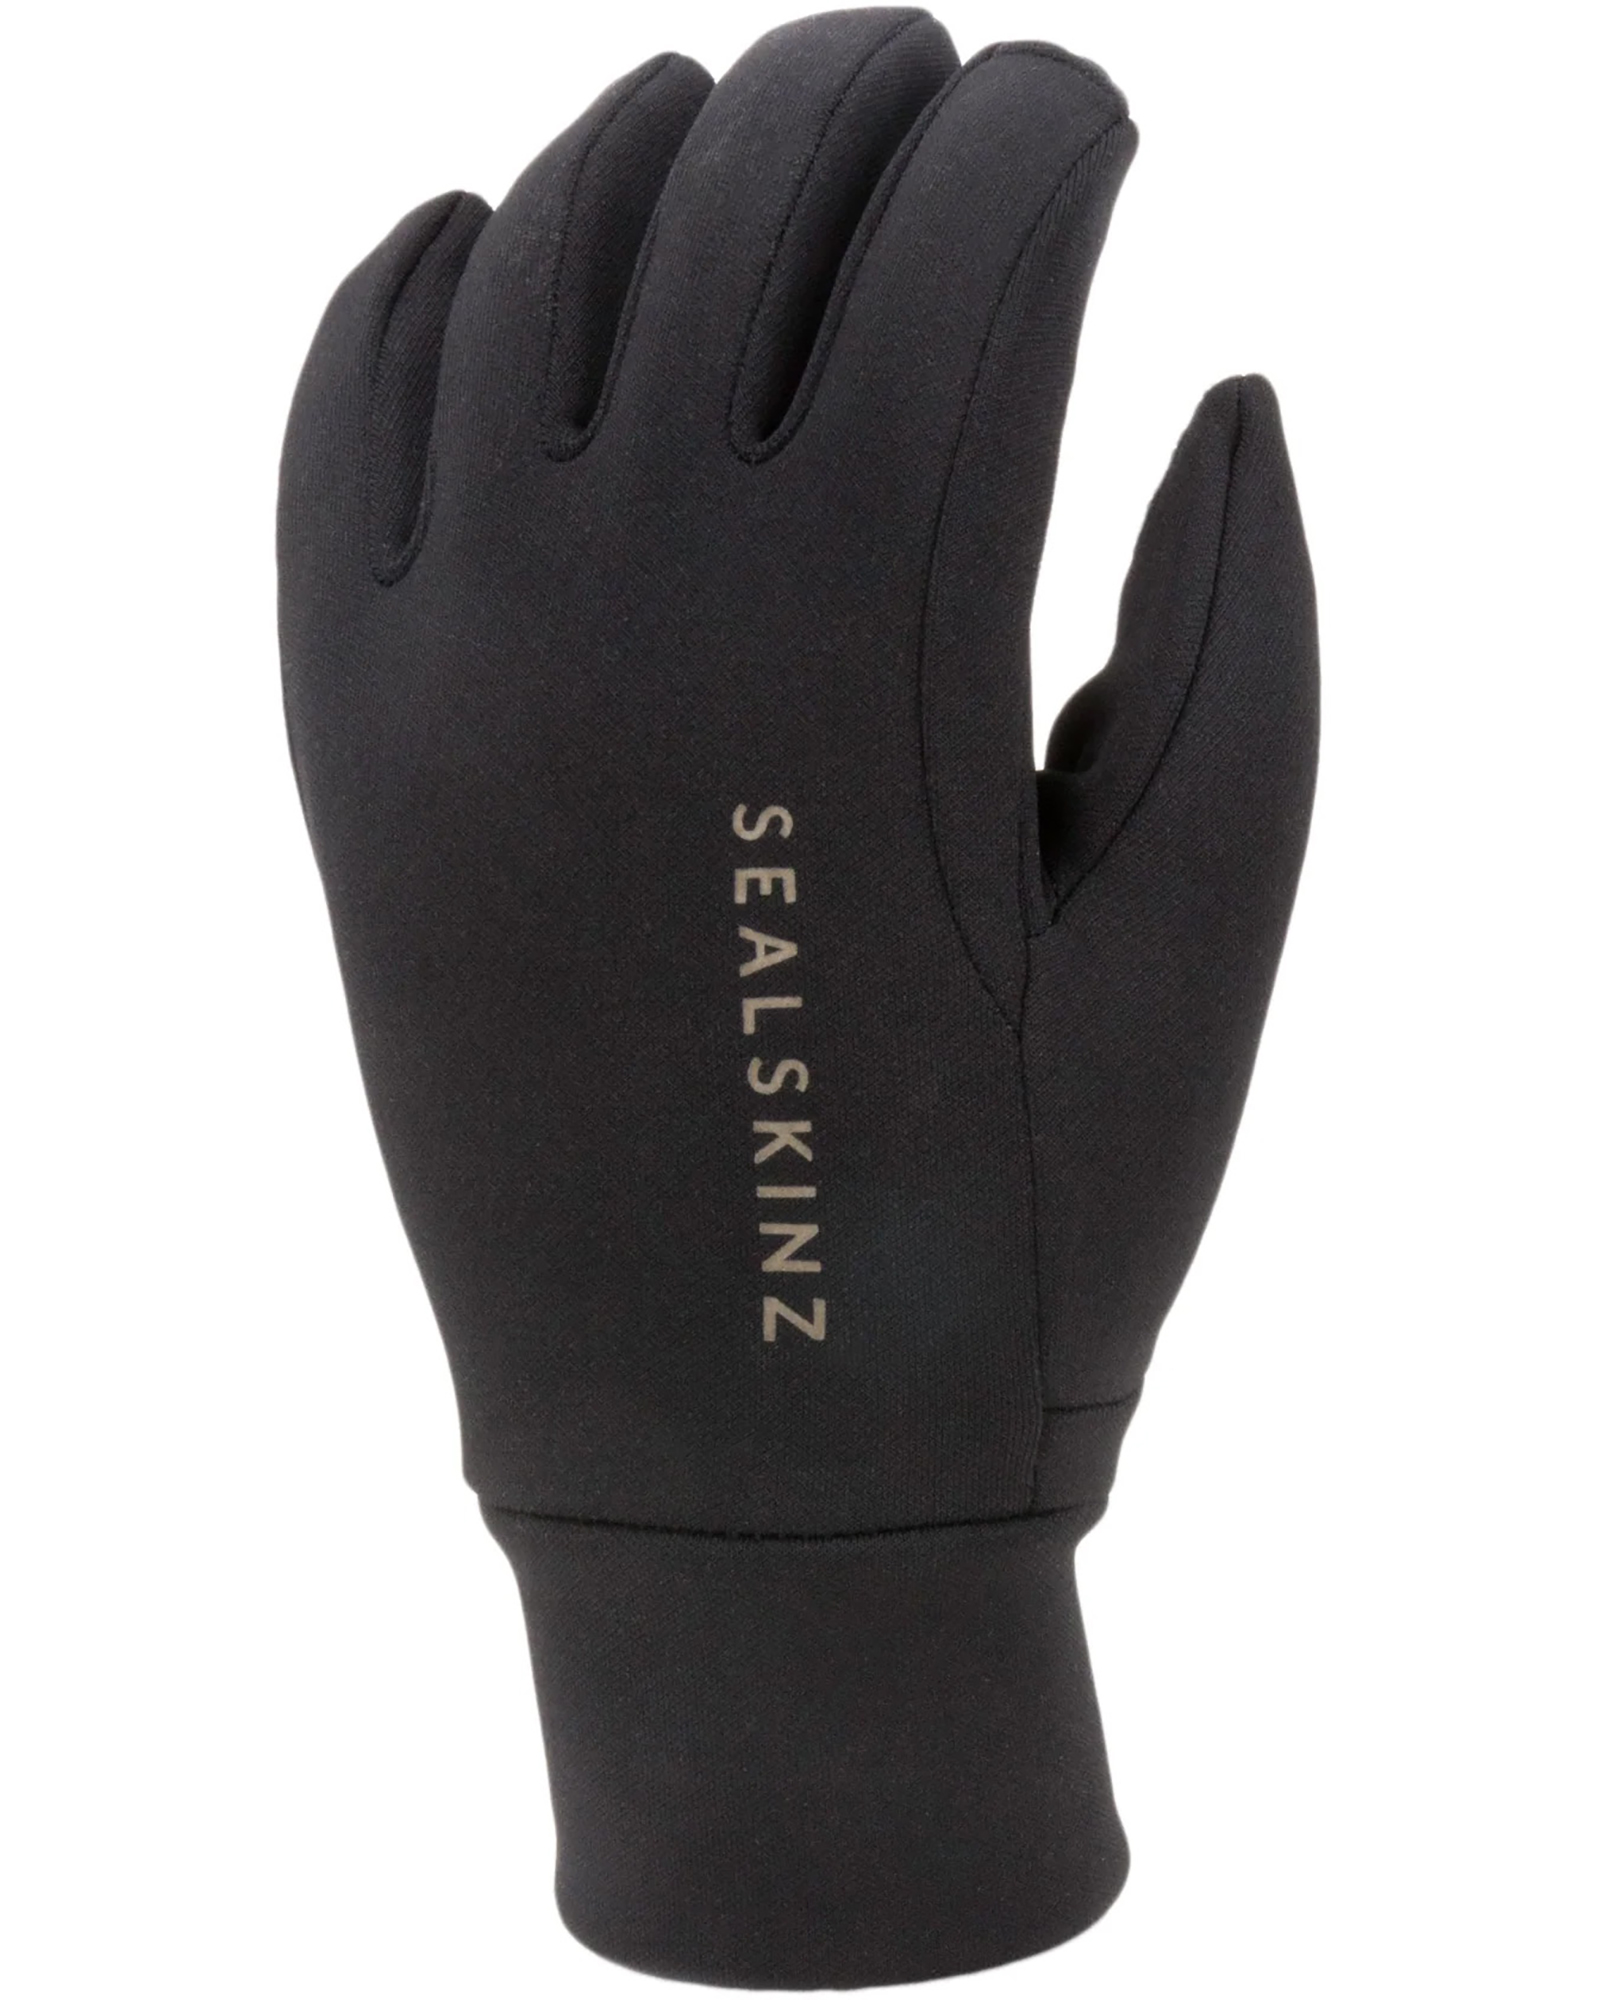 Sealskinz Tasburgh Gloves - black S